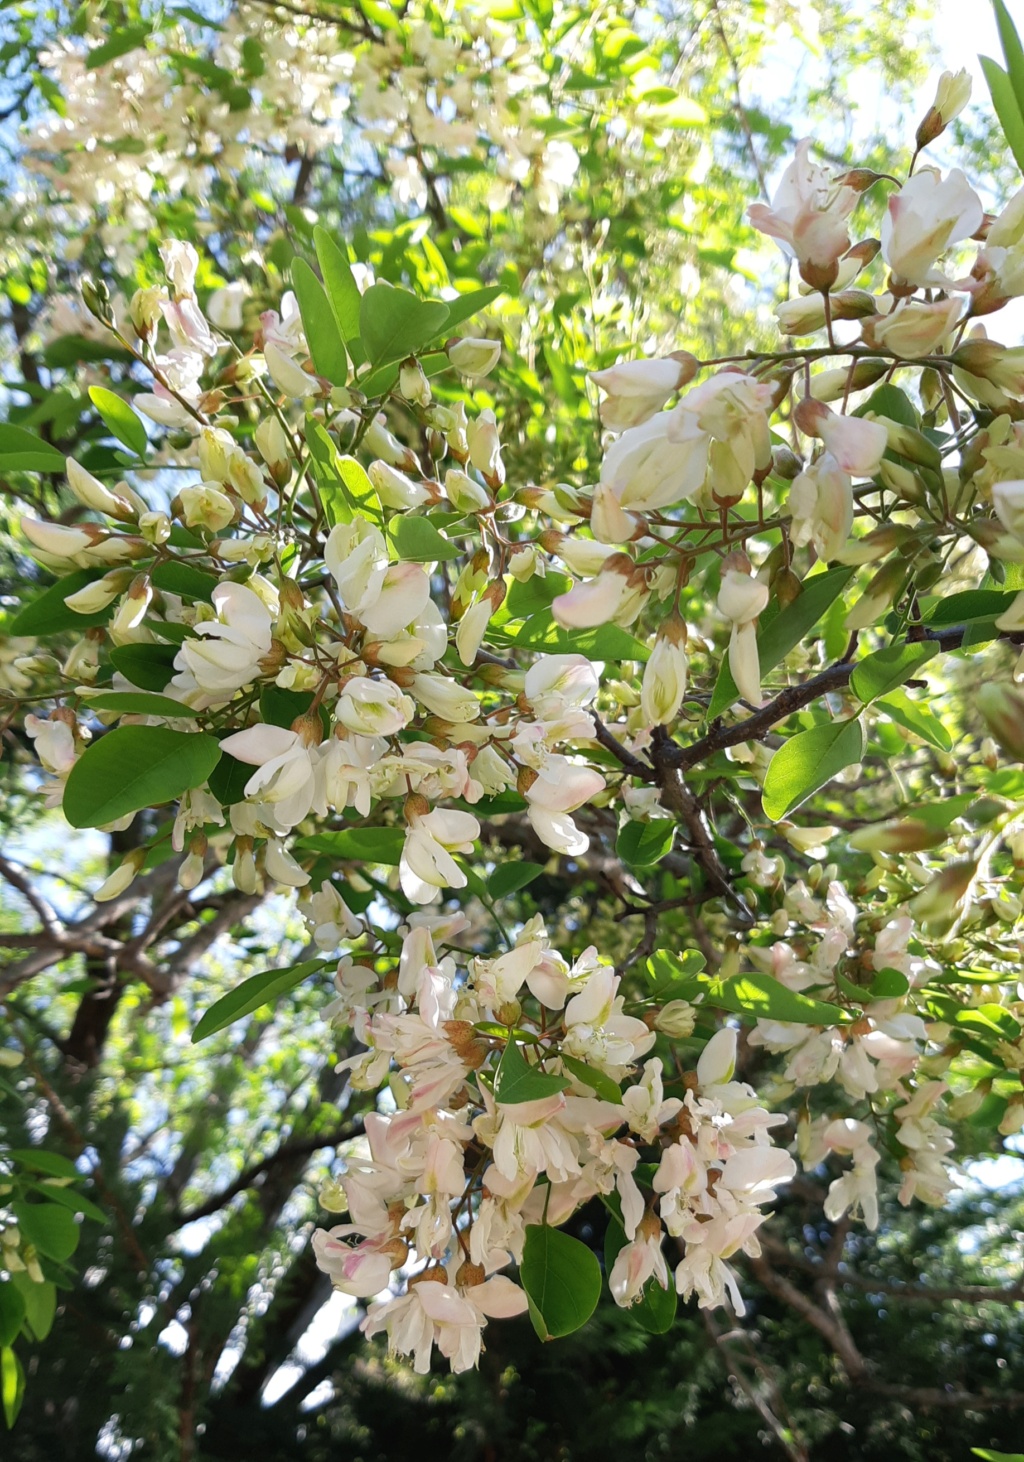 acacia en fleurs (quizz du dimanche trouvé par les brillantes lucioles !) 20220415